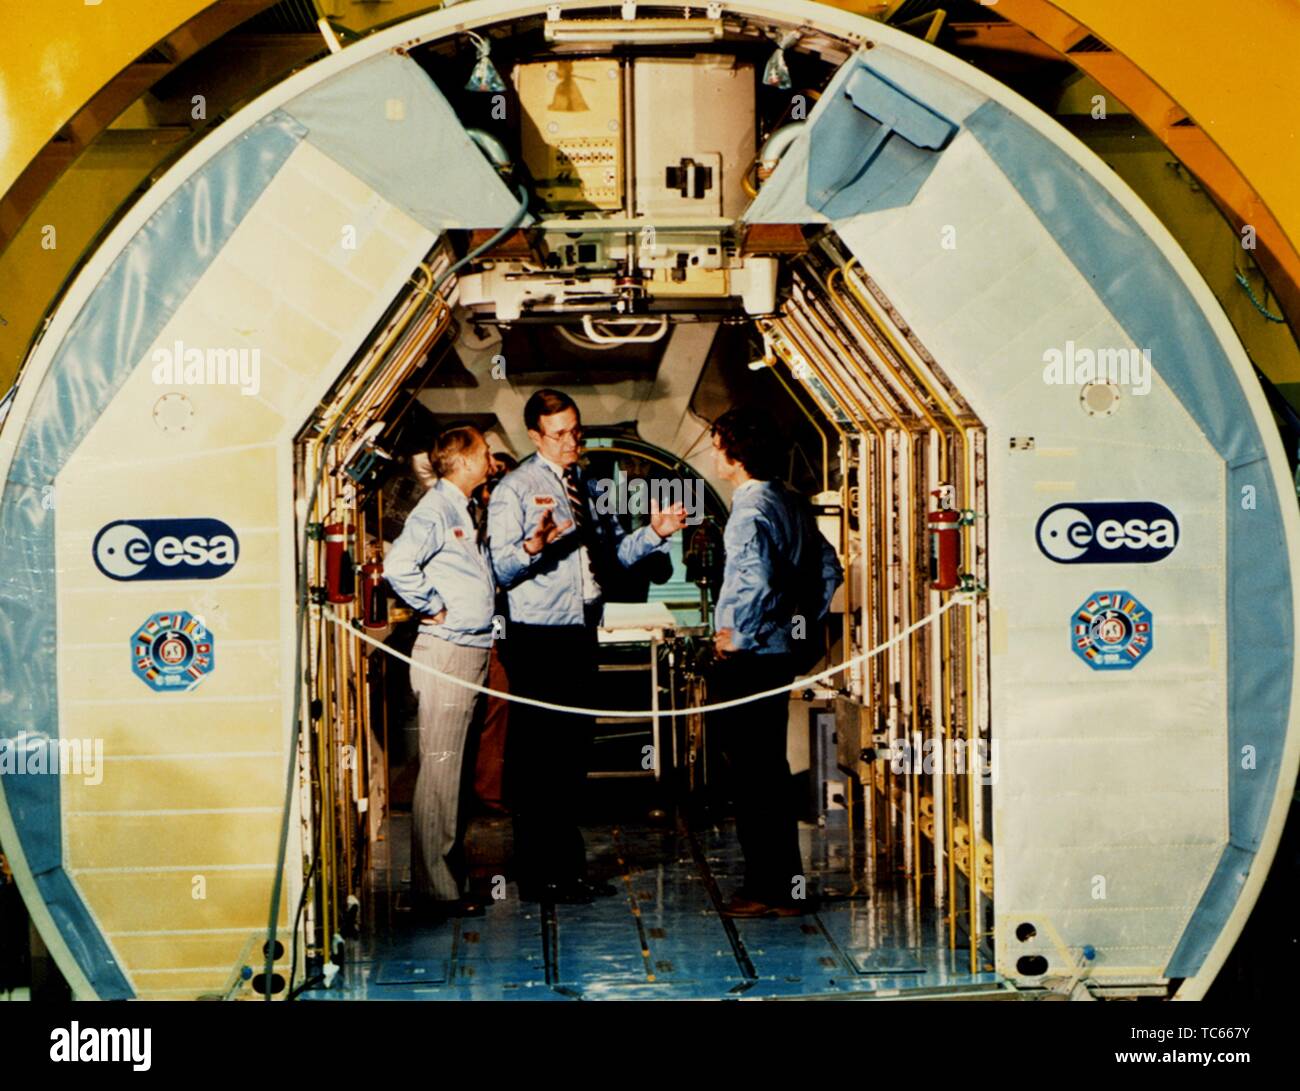 Astronauta Owen K Garriott, Vice Presidente George Bush e Ulf Merbold della Germania Ovest all'interno di Spacelab in operazioni e acquista la costruzione presso il Centro Spaziale Kennedy, Merritt Island, Florida, 5 febbraio 1982. Immagine cortesia Nazionale Aeronautica e Spaziale Administration (NASA). () Foto Stock